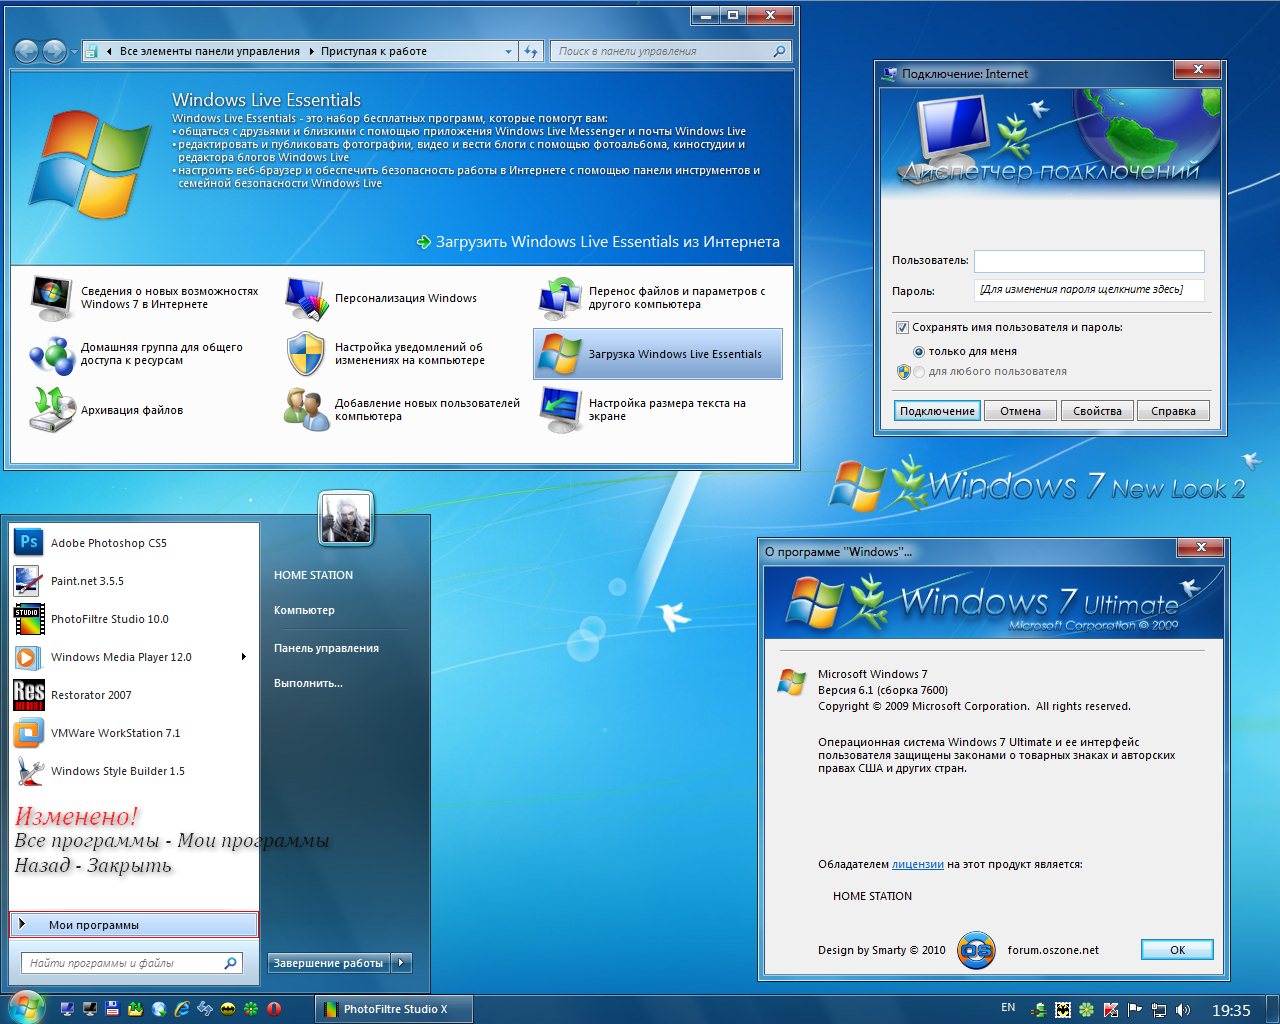 X PROJECT 2011 RUS скачать бесплатно - Пакет оформления для Windows 7